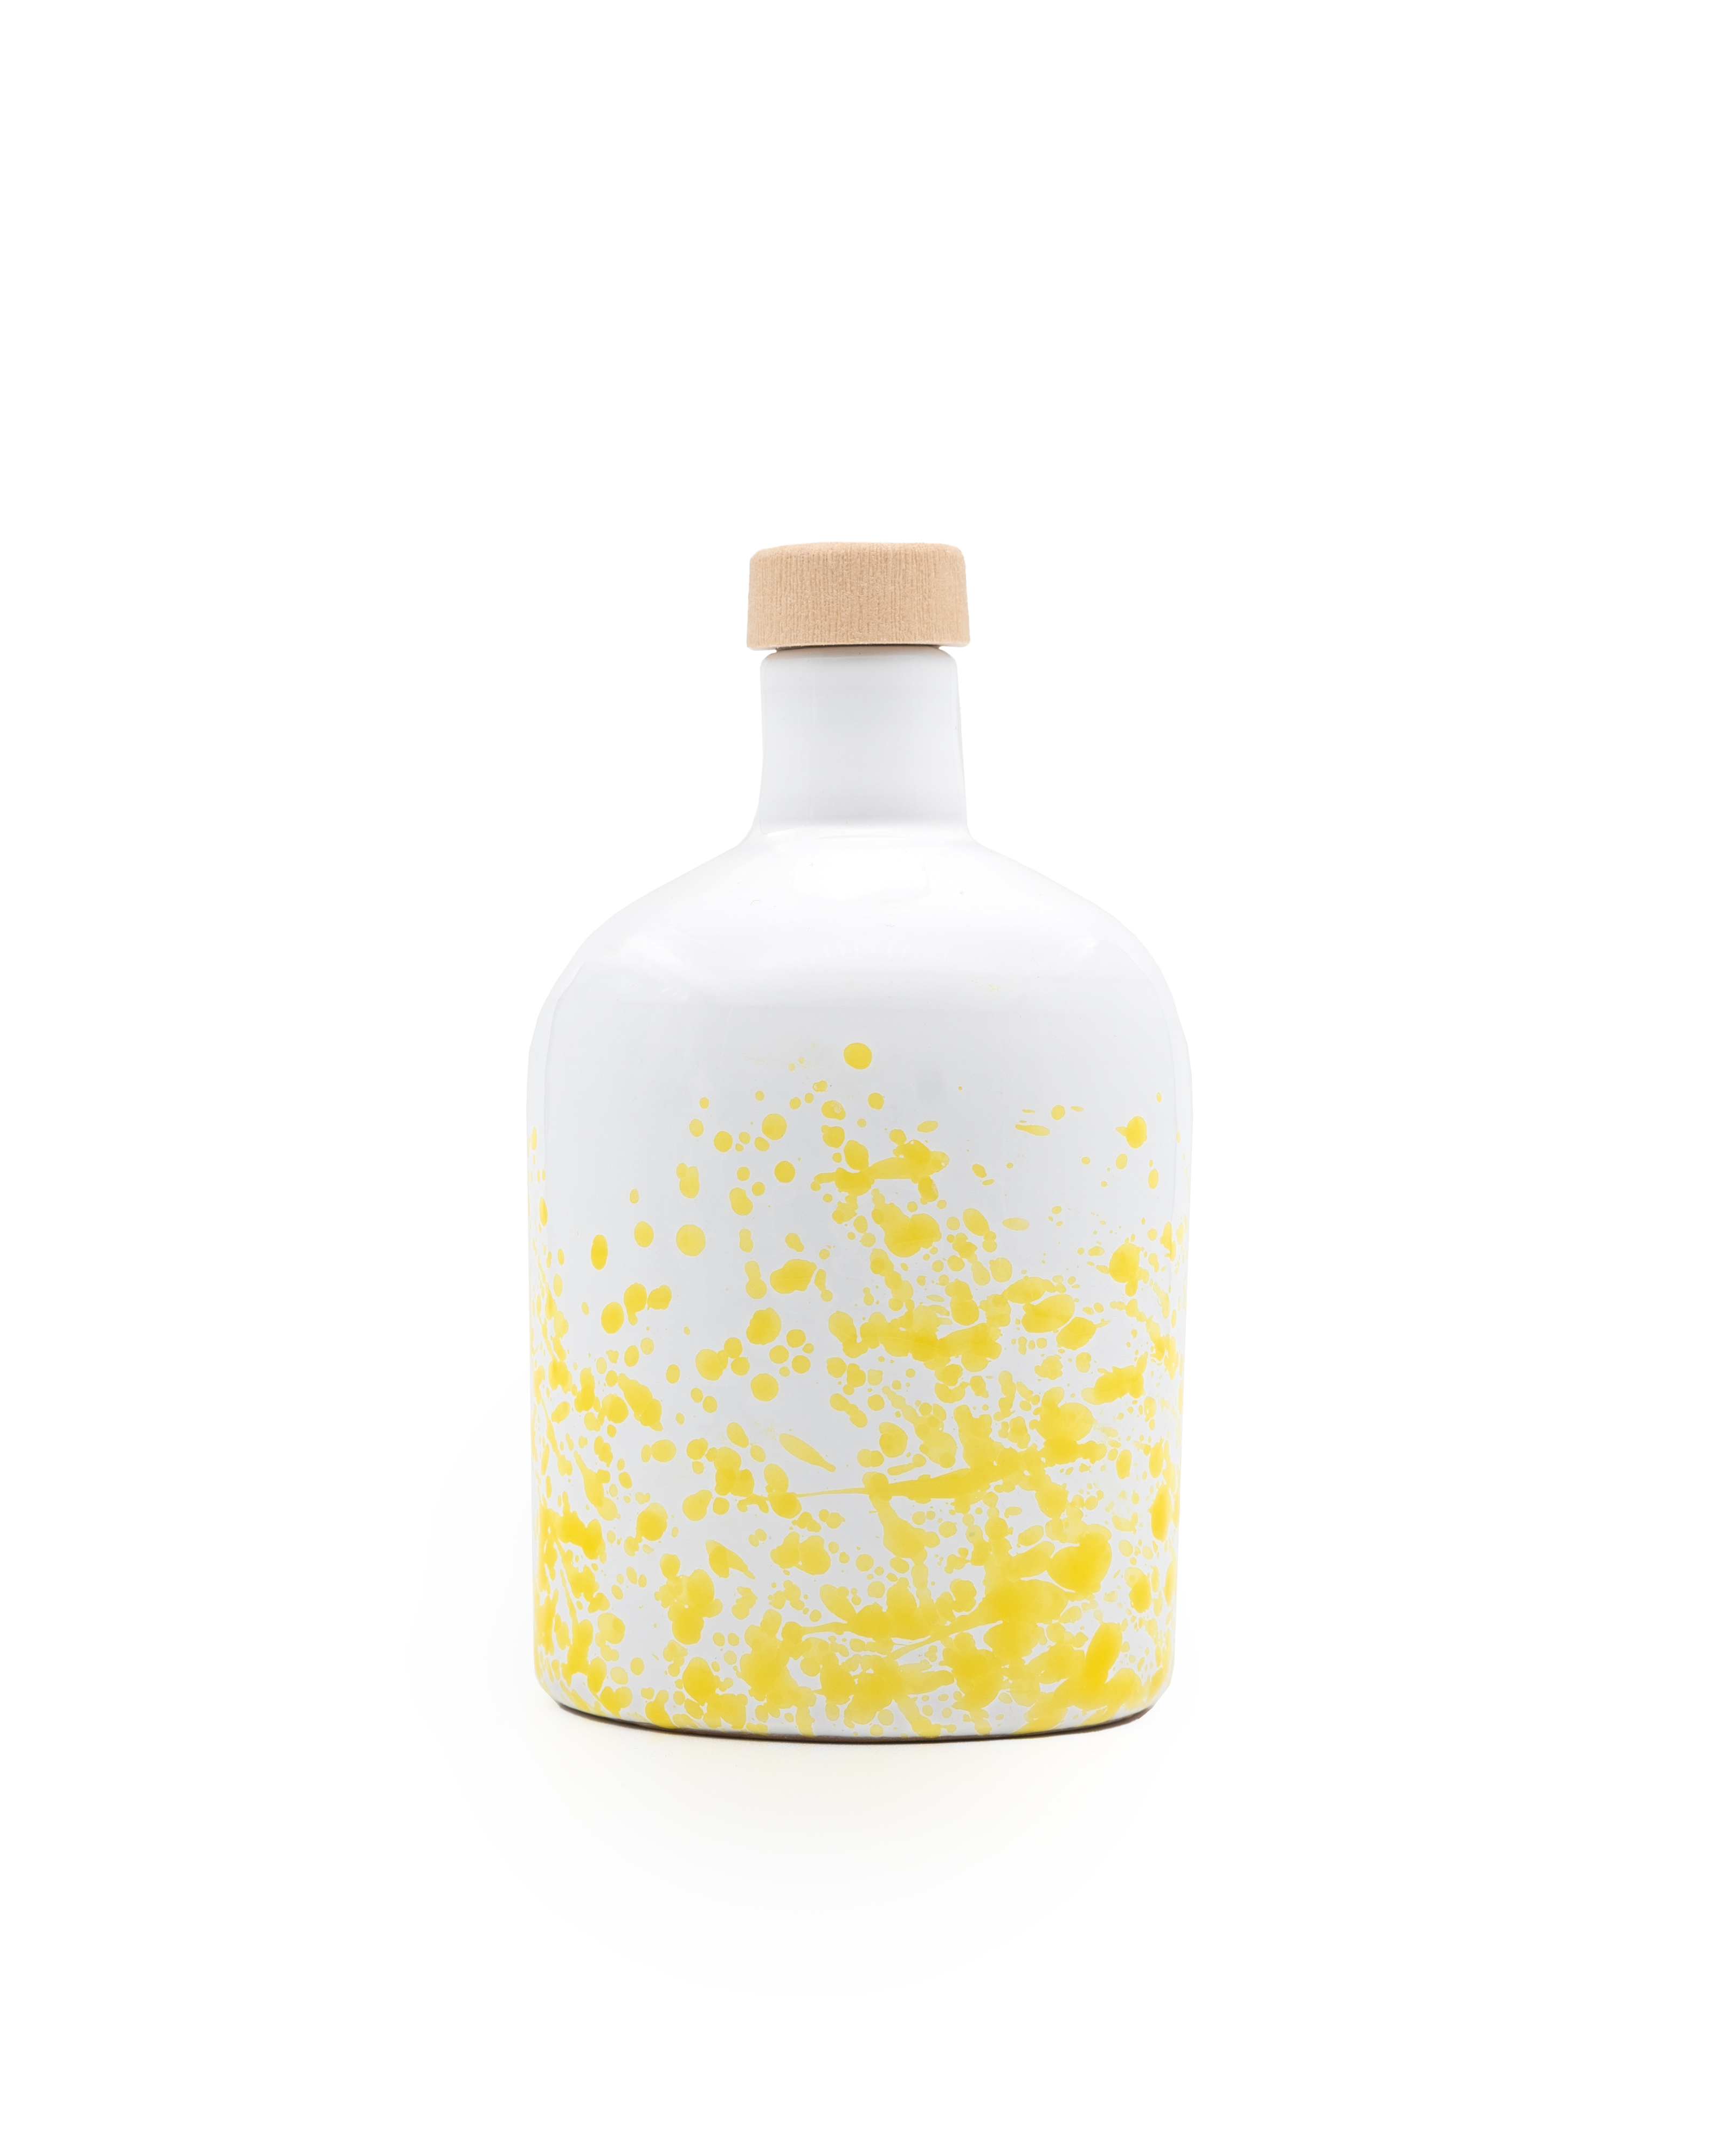 ANDANTE natives Bio-Olivenöl Extra, gefiltert, 500ml Keramikflasche gelb